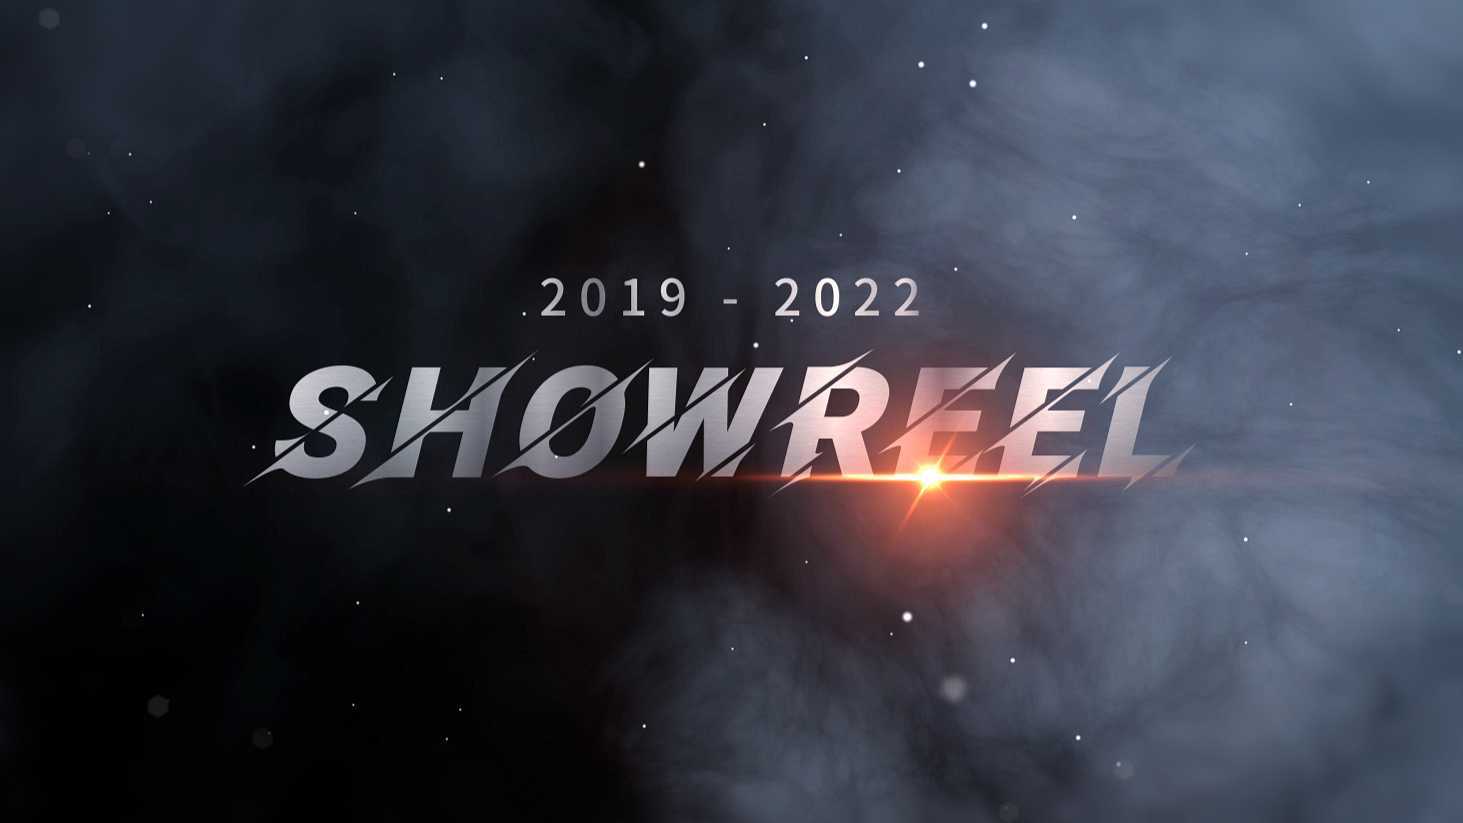 2019-2022 SHOWREEL